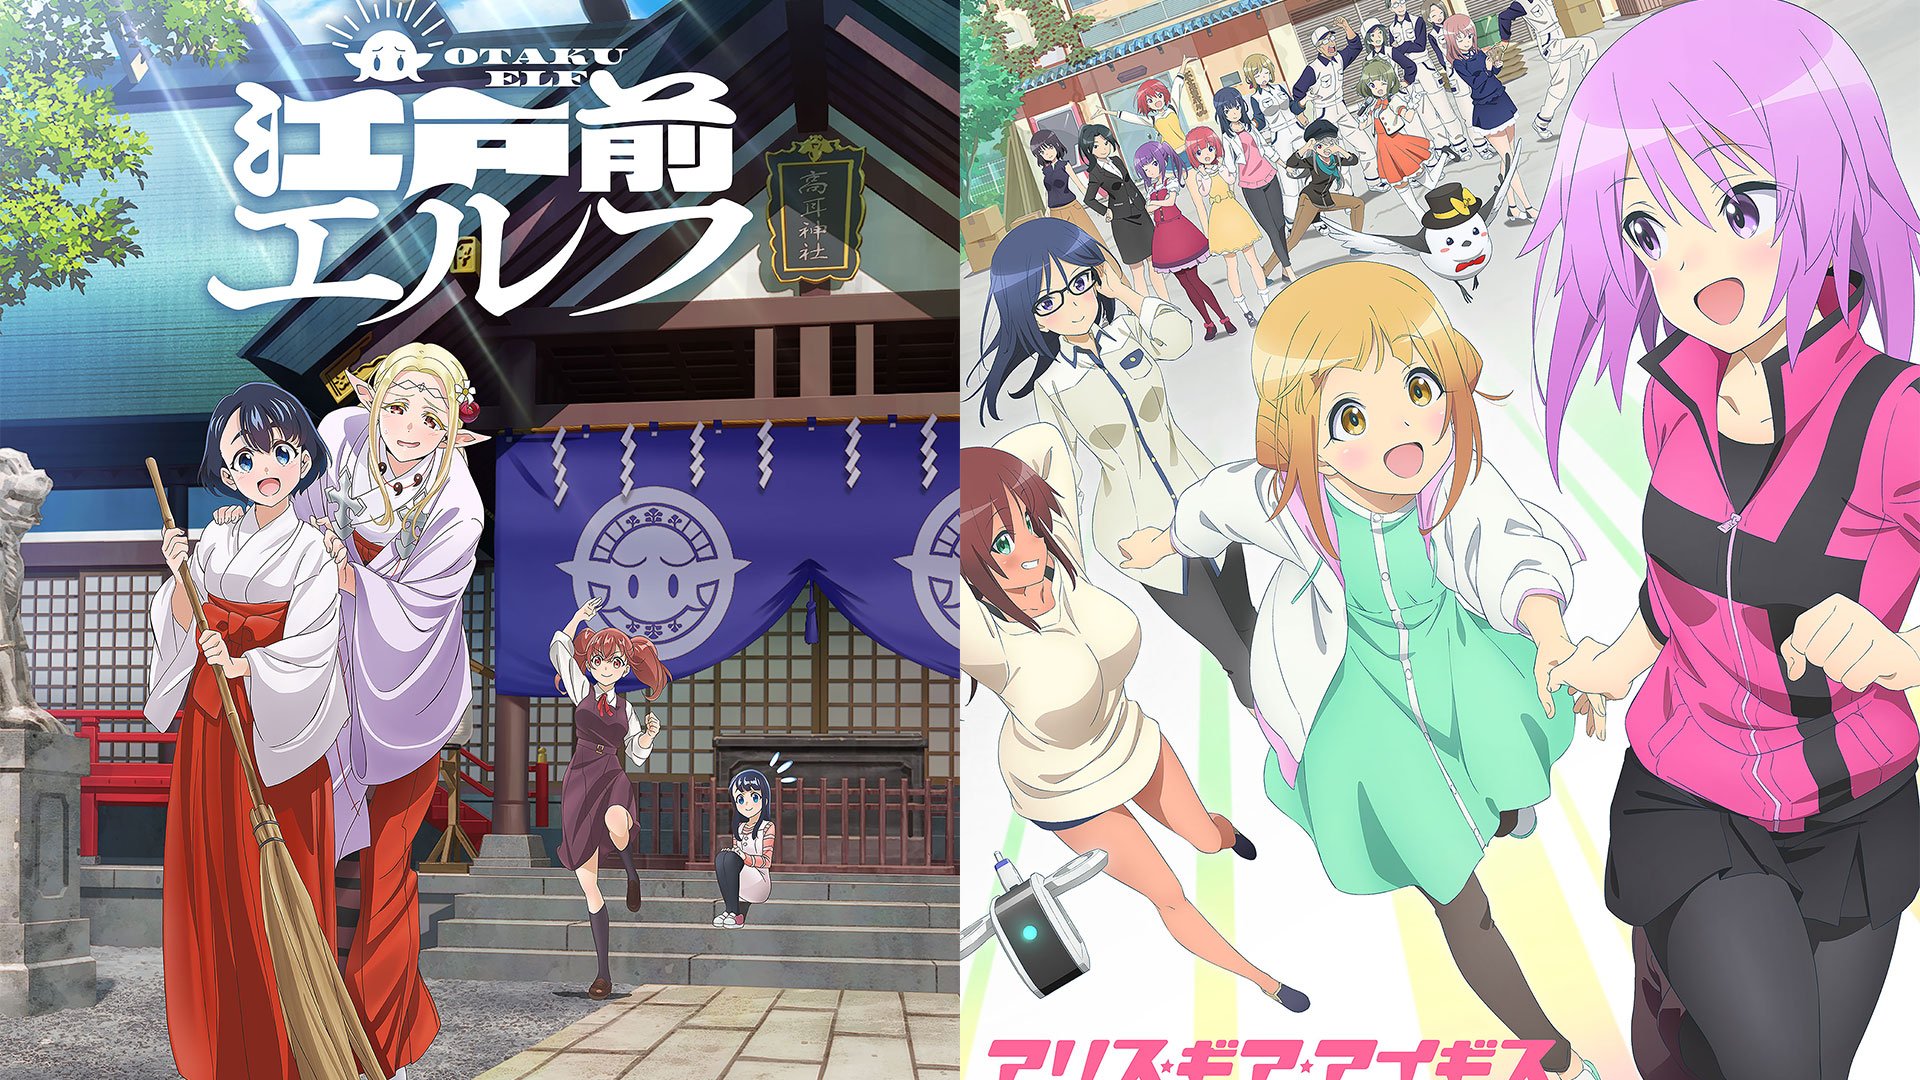 HIDIVE Streams TOKYO MEW MEW NEW Season 2 Anime April 4